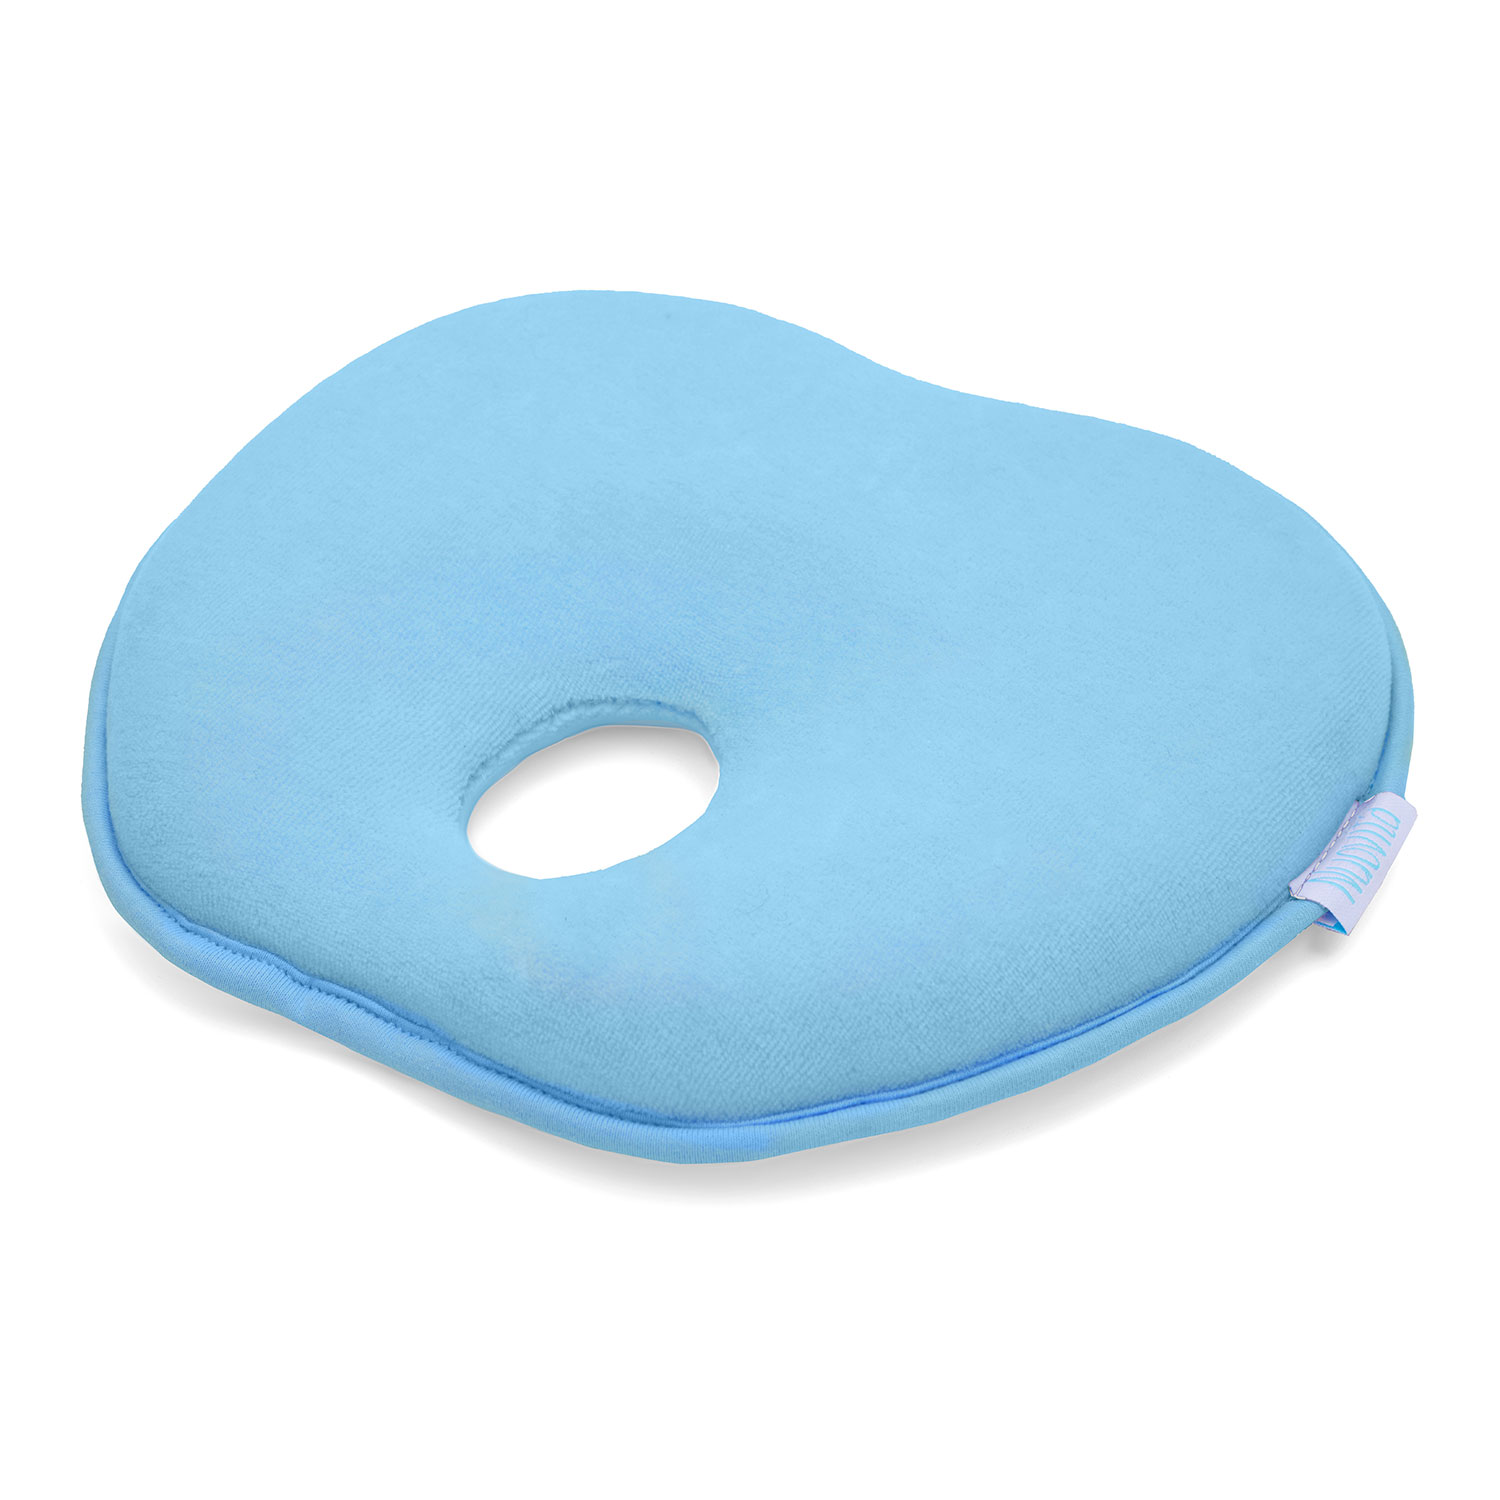 Подушка для новорожденного Nuovita NEONUTTI Mela Memoria Blu/Голубой подушка для новорожденного nuovita neonutti cuore memoria bianco белый